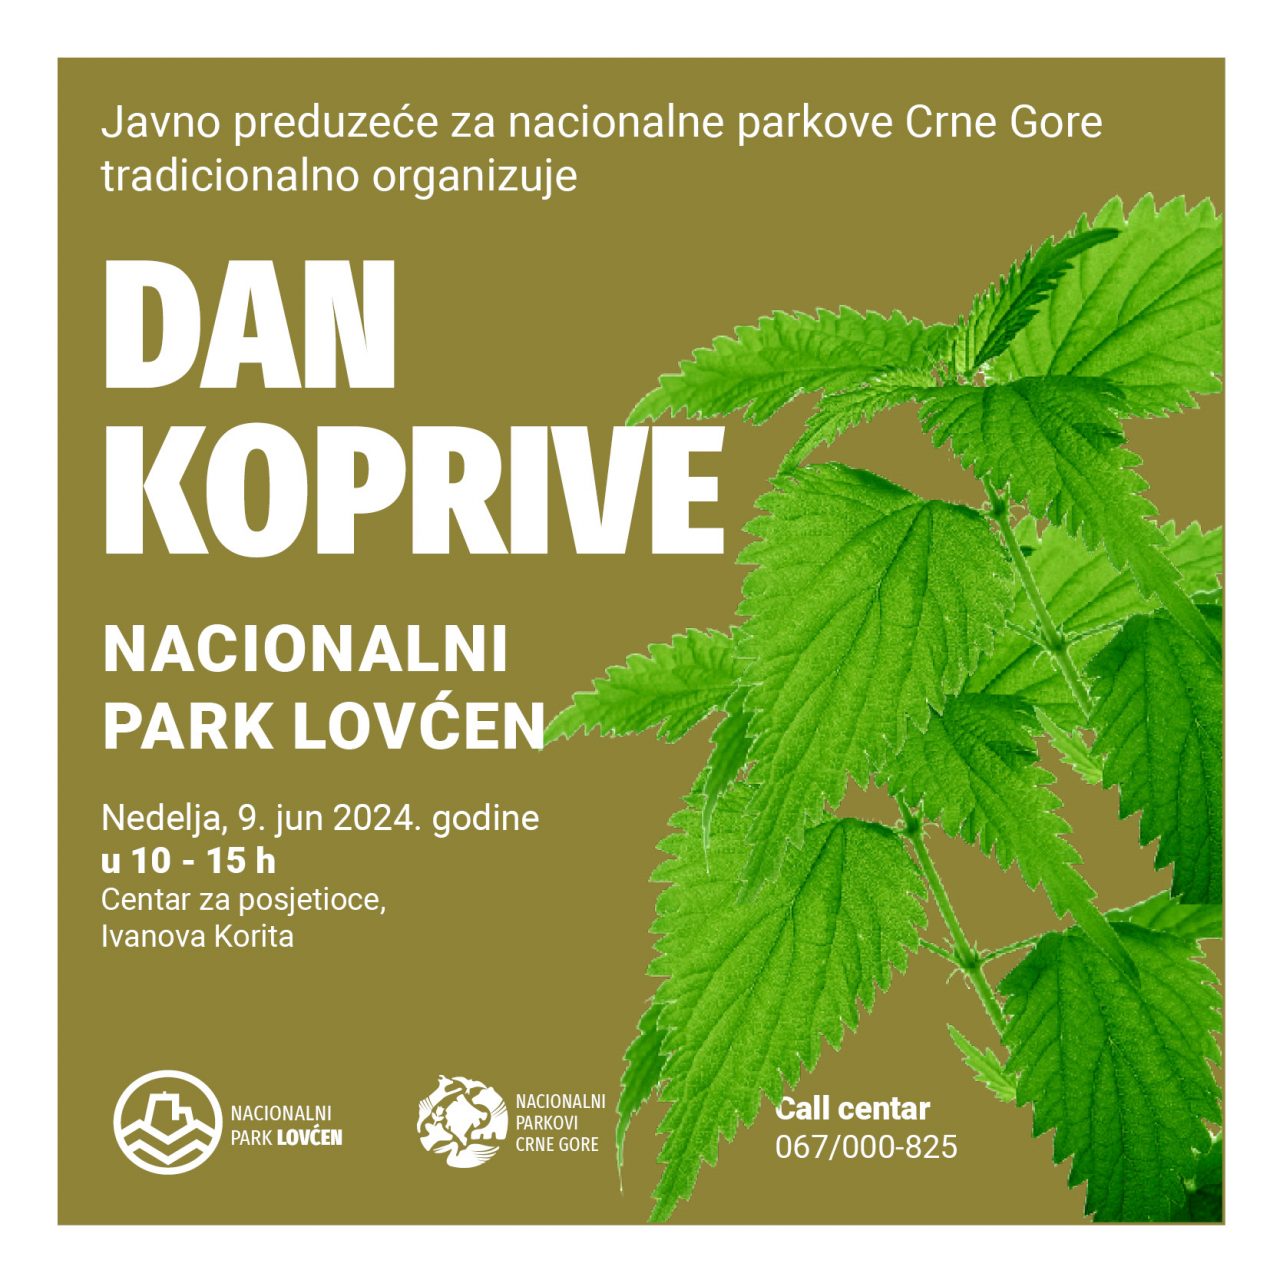 Posjetite “Dan koprive” u Nacionalnom parku Lovćen 9. juna